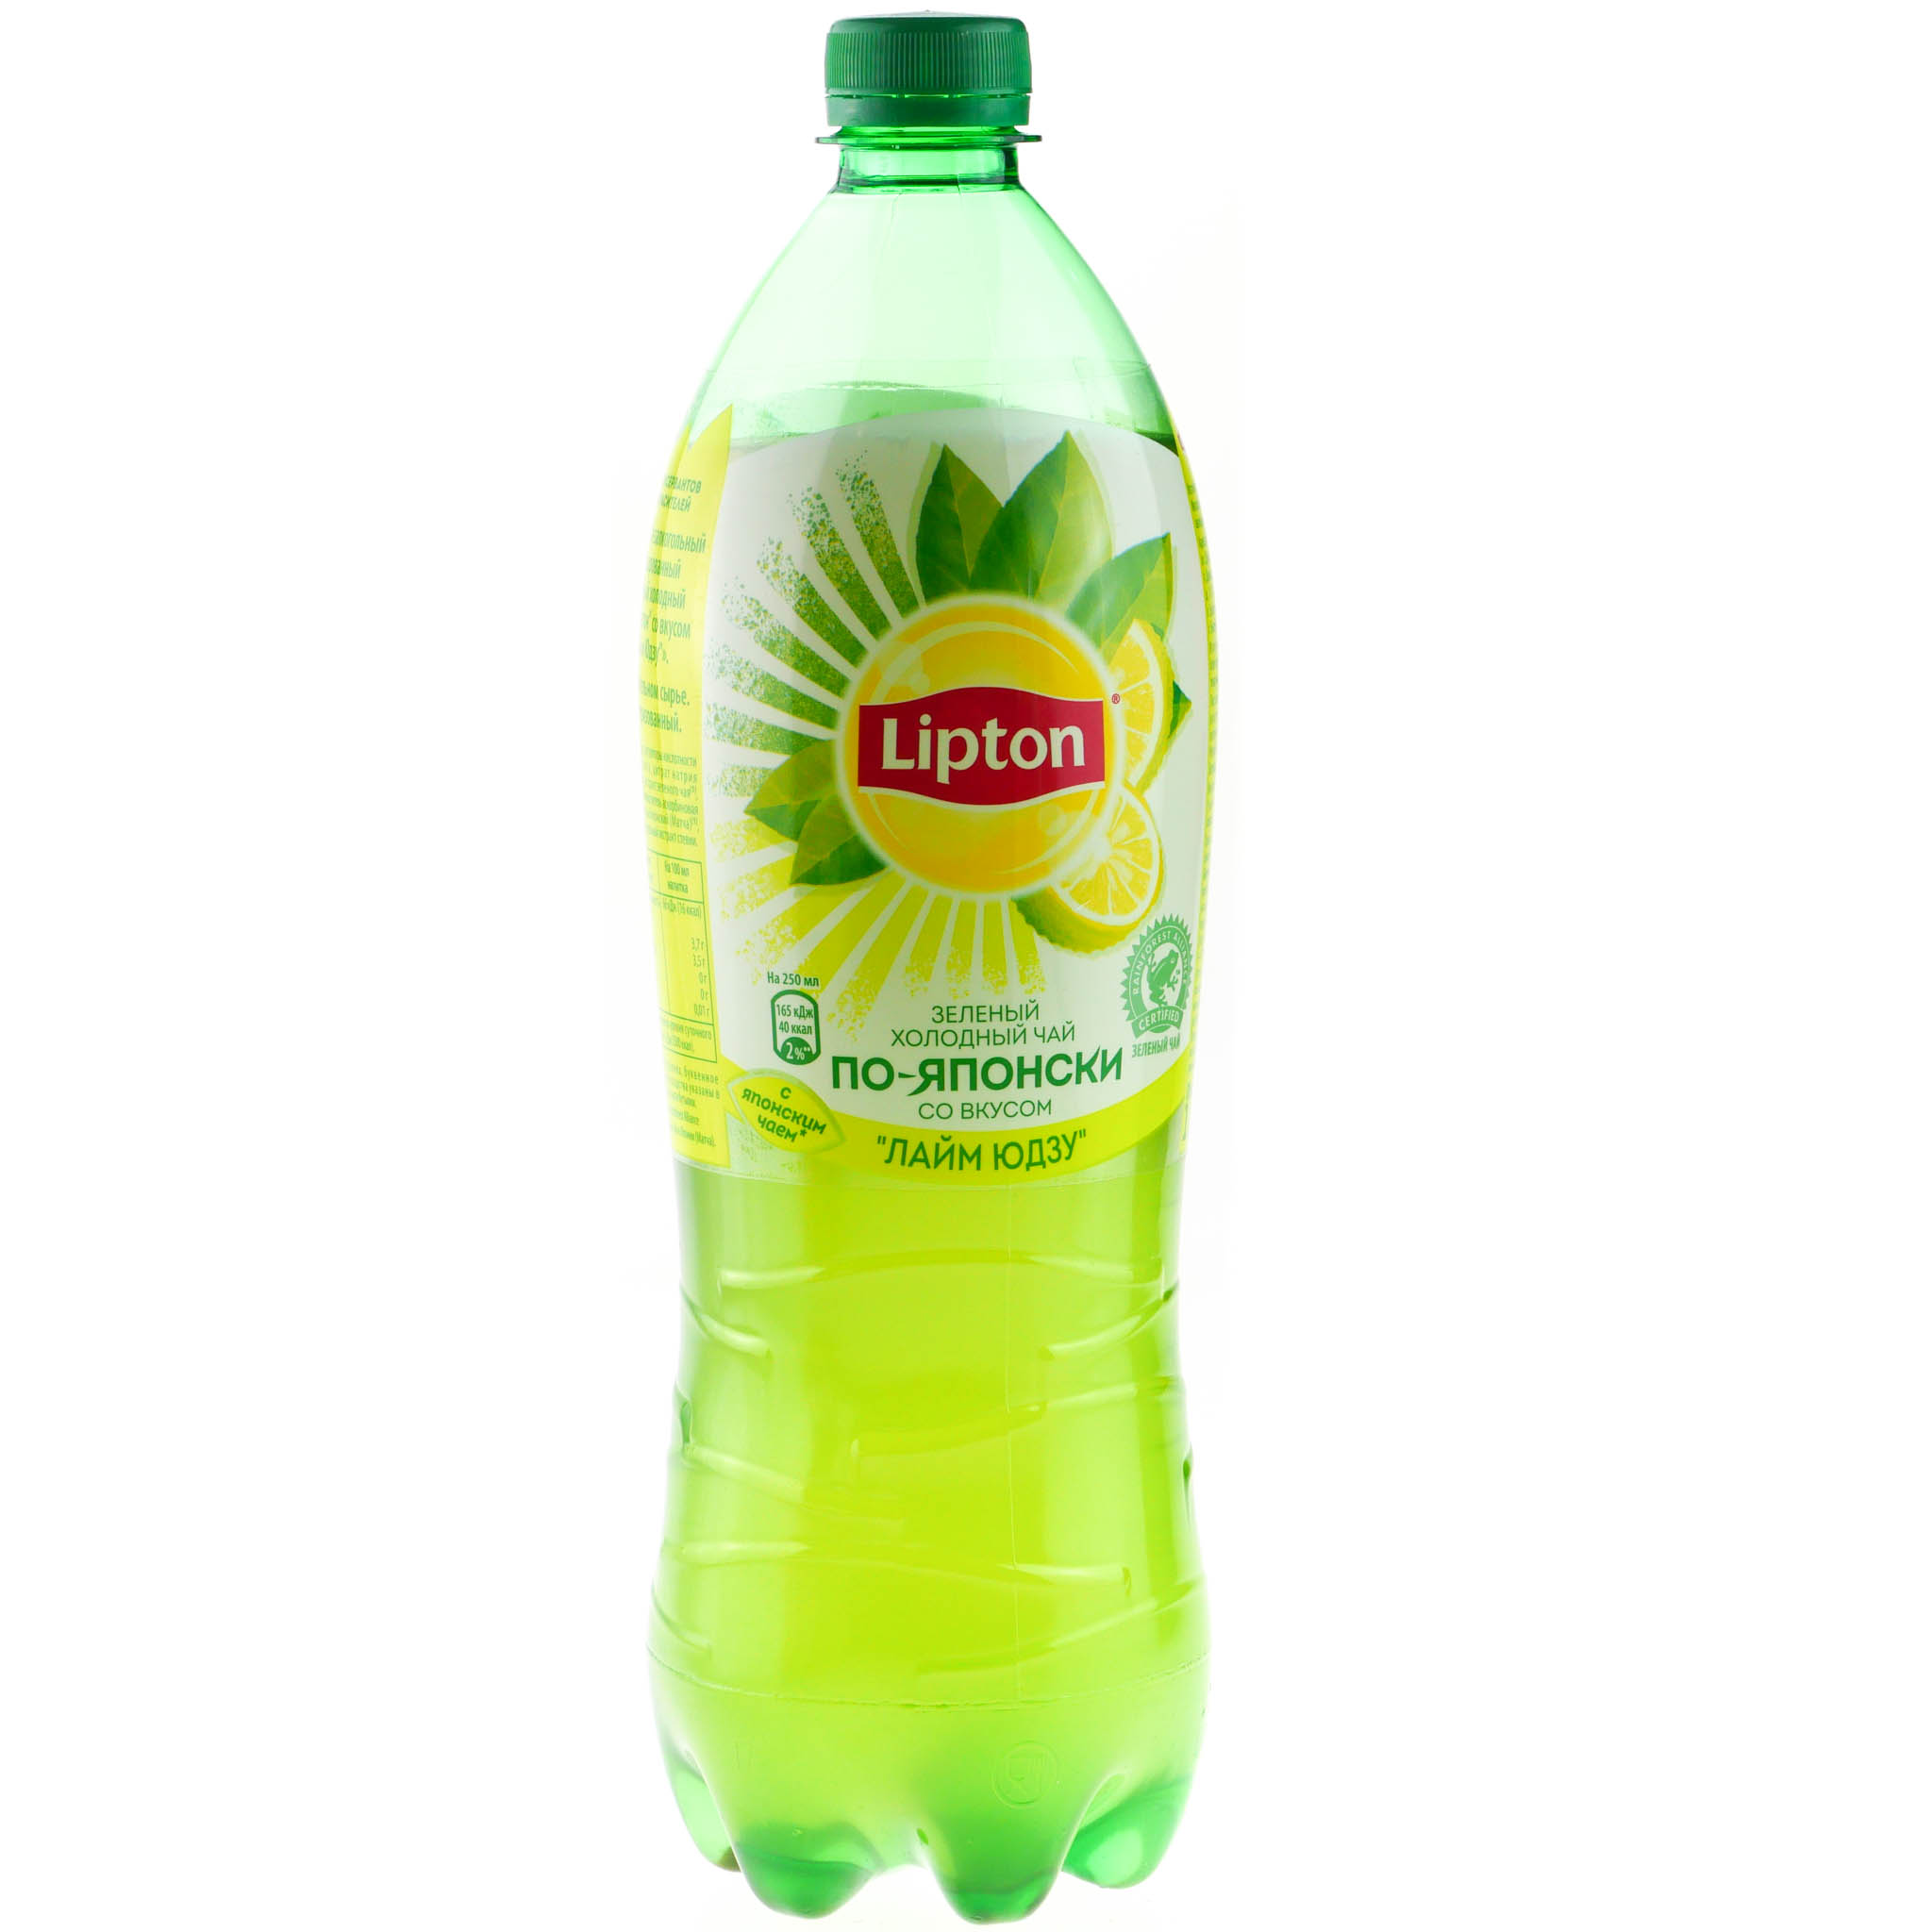 Липтон зеленый бутылка. Липтон зеленый чай 1л. Липтон зеленый 1 литр. Чай Липтон холодный зеленый 1л. Липтон зелёный холодный чай 1 литр.